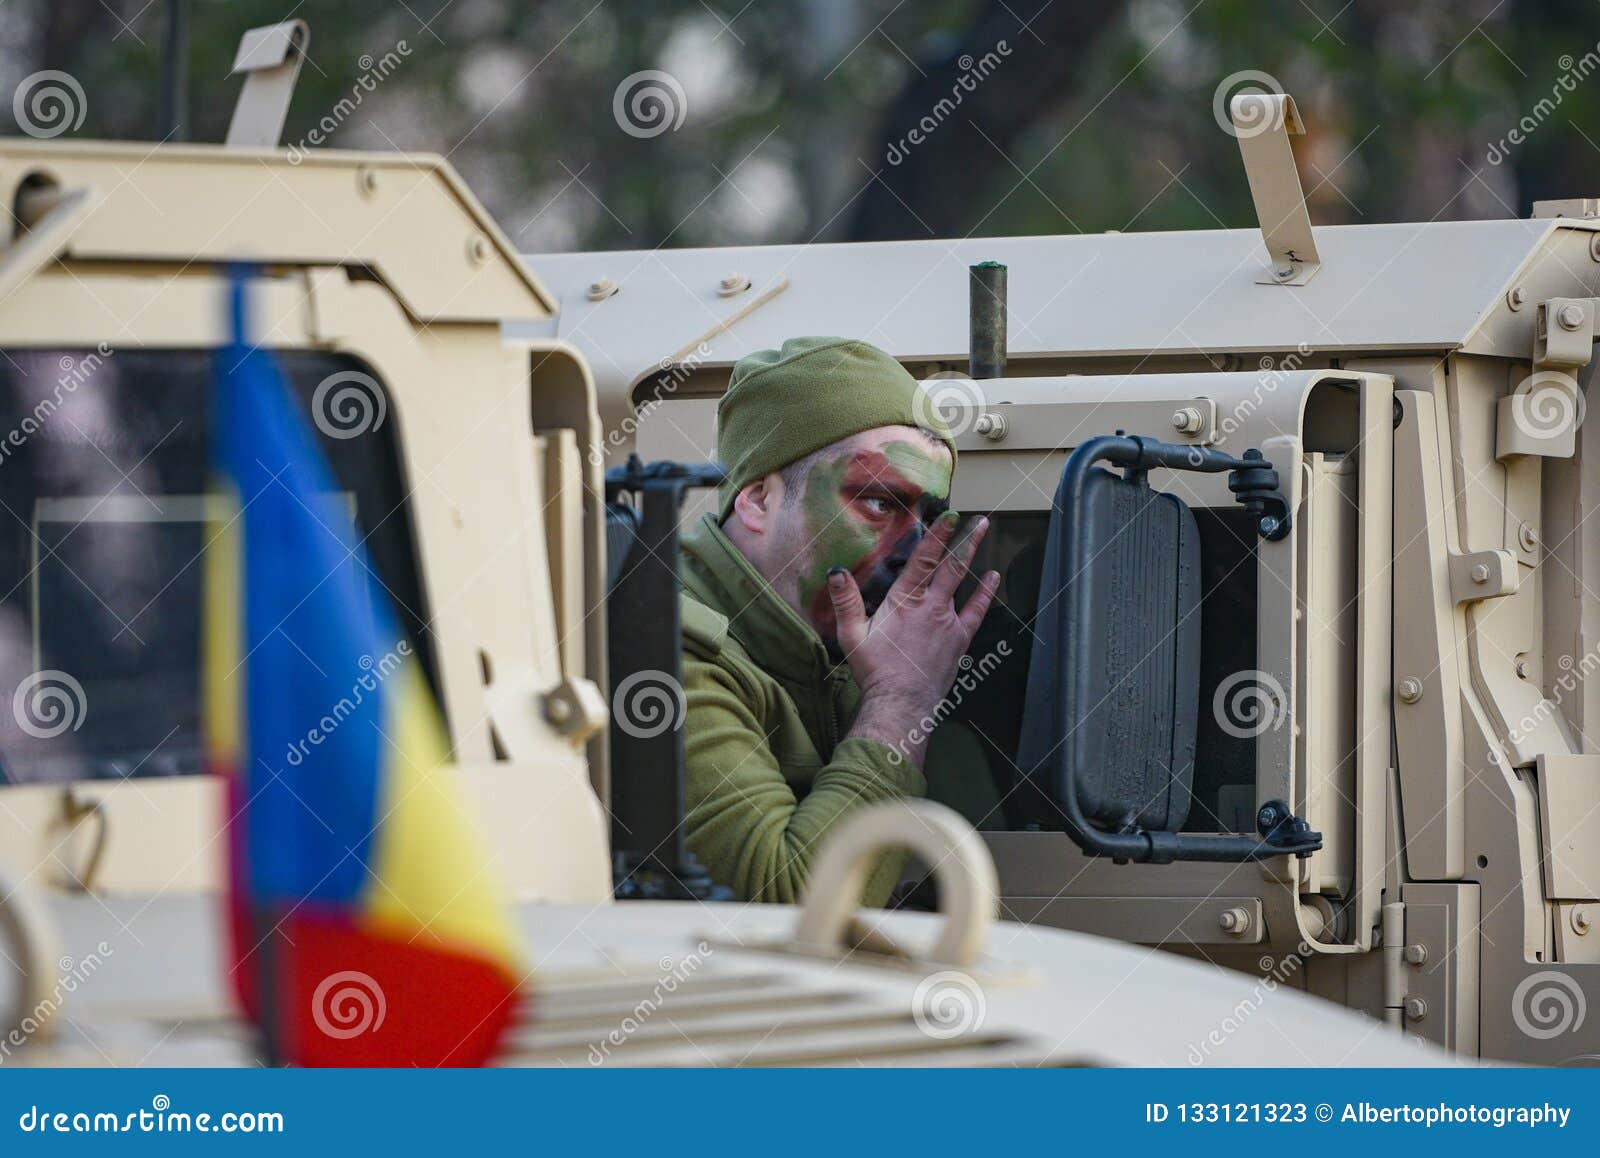 Βουκουρέστι, Ρουμανία - 1 Δεκεμβρίου 2018: Ρουμανικός στρατιώτης στρατού που προετοιμάζεται για τη στρατιωτική παρέλαση που χαρακτηρίζει τη μεγάλη ημέρα ένωσης της Ρουμανίας, στο Βουκουρέστι, Ρουμανία, την 1η Δεκεμβρίου 2018